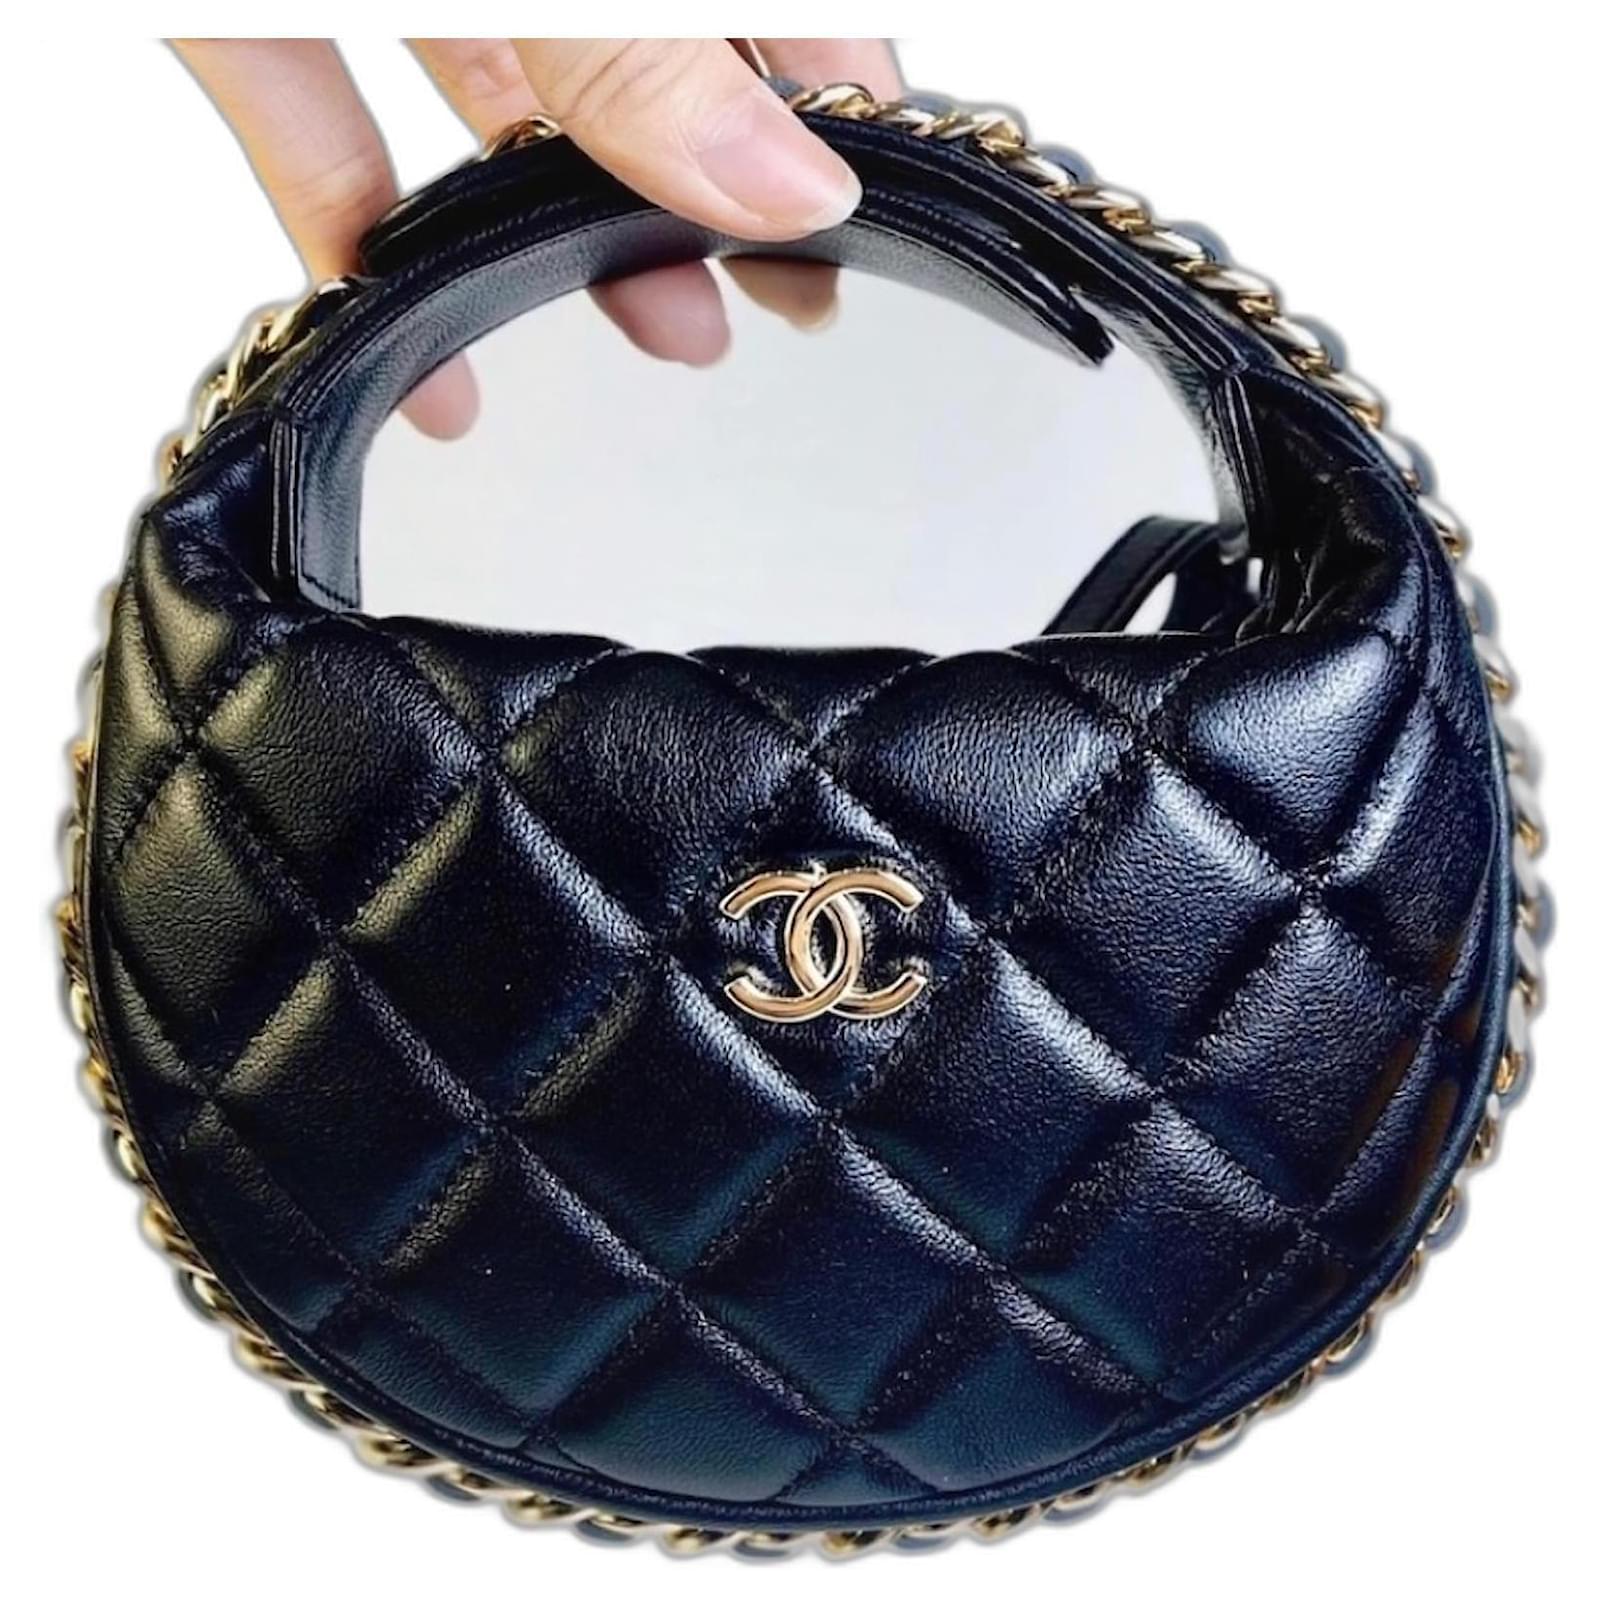 Chanel  Fashion, Micro bags, Chanel handbags